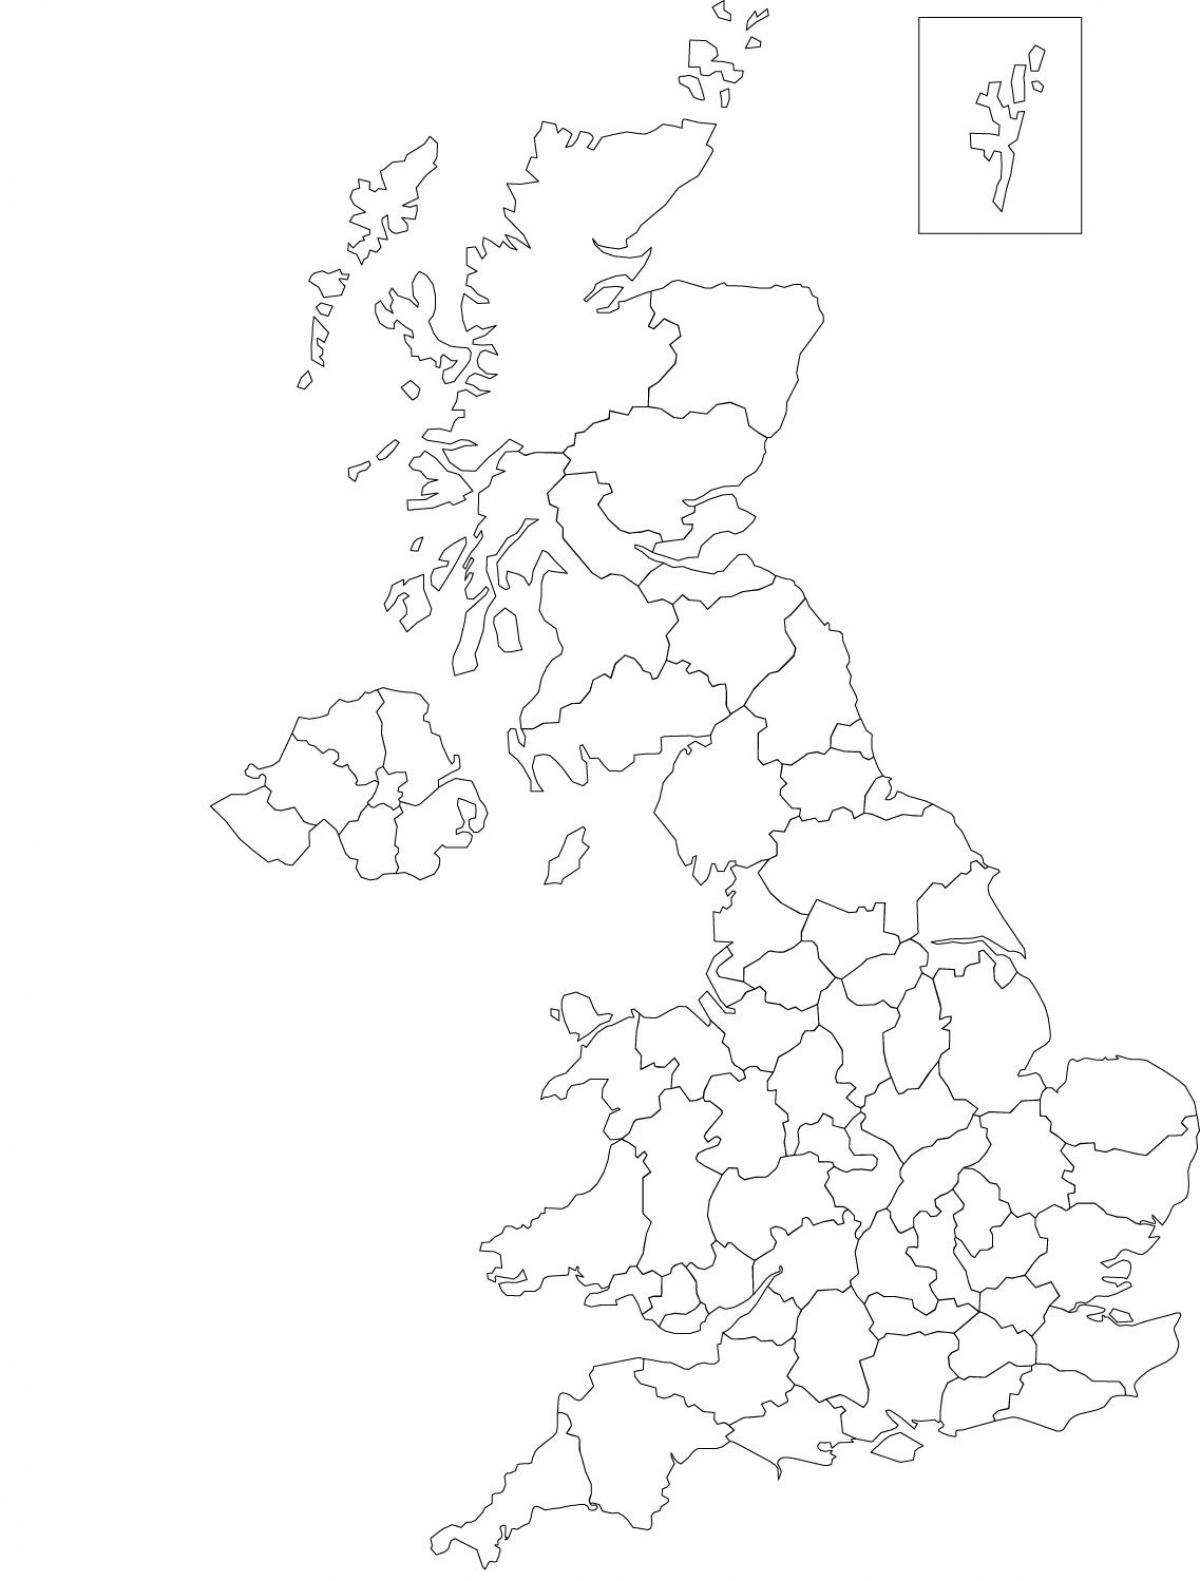 خريطة معالم المملكة المتحدة (المملكة المتحدة)